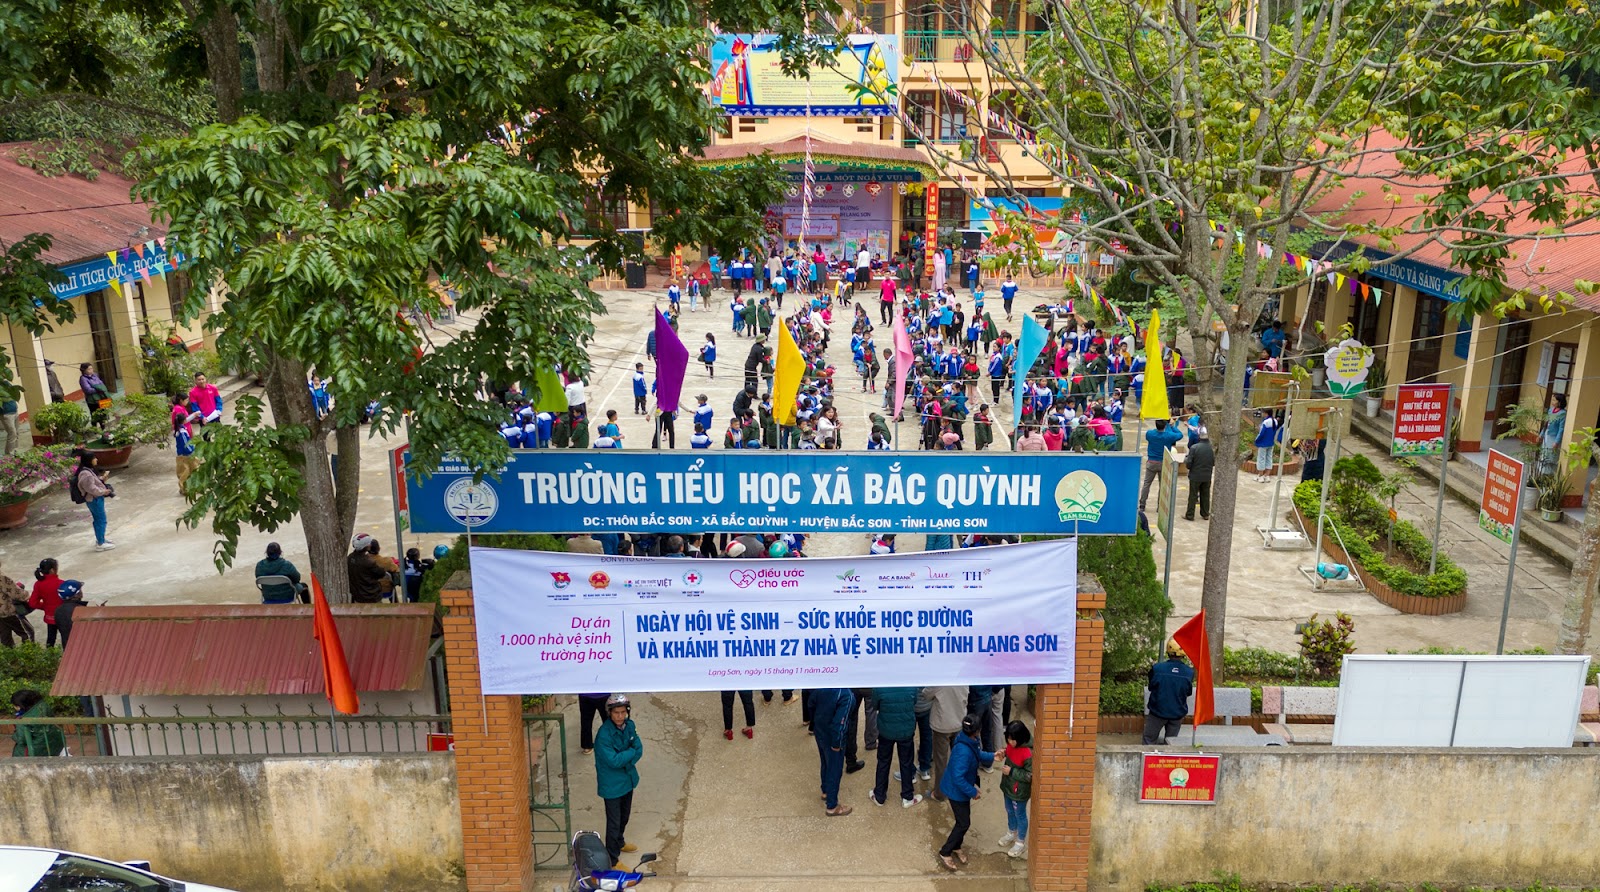 Quỹ Vì tầm vóc Việt triển khai dự án 1.000 nhà vệ sinh trường học: Niềm vui mới ở những ngôi trường vùng cao - Ảnh 1.